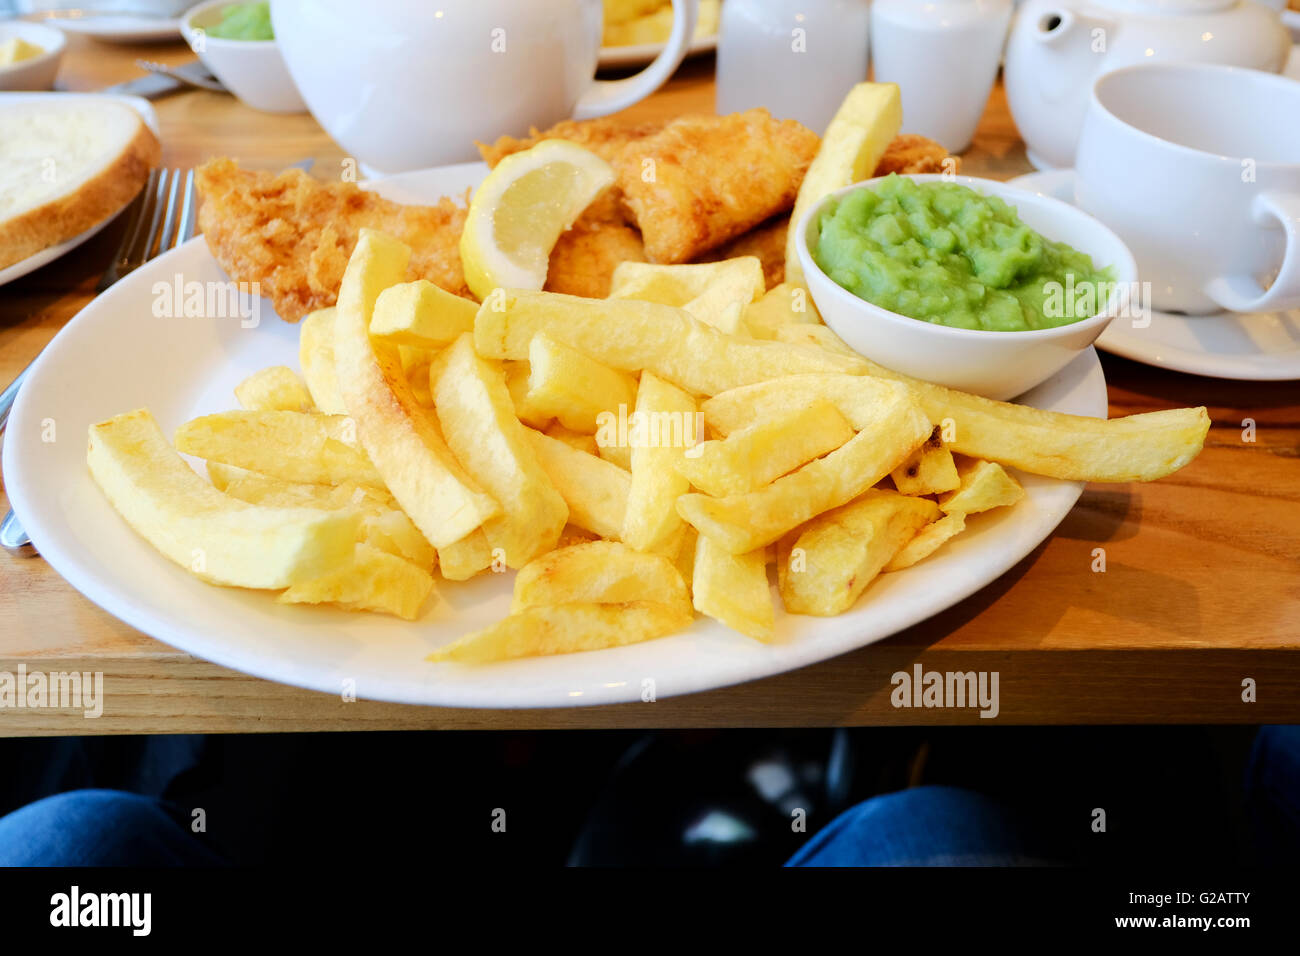 Ein Teller mit englischen Fisch, Chips und Erbsenpüree serviert auf einem Teller in einem restaurant Stockfoto